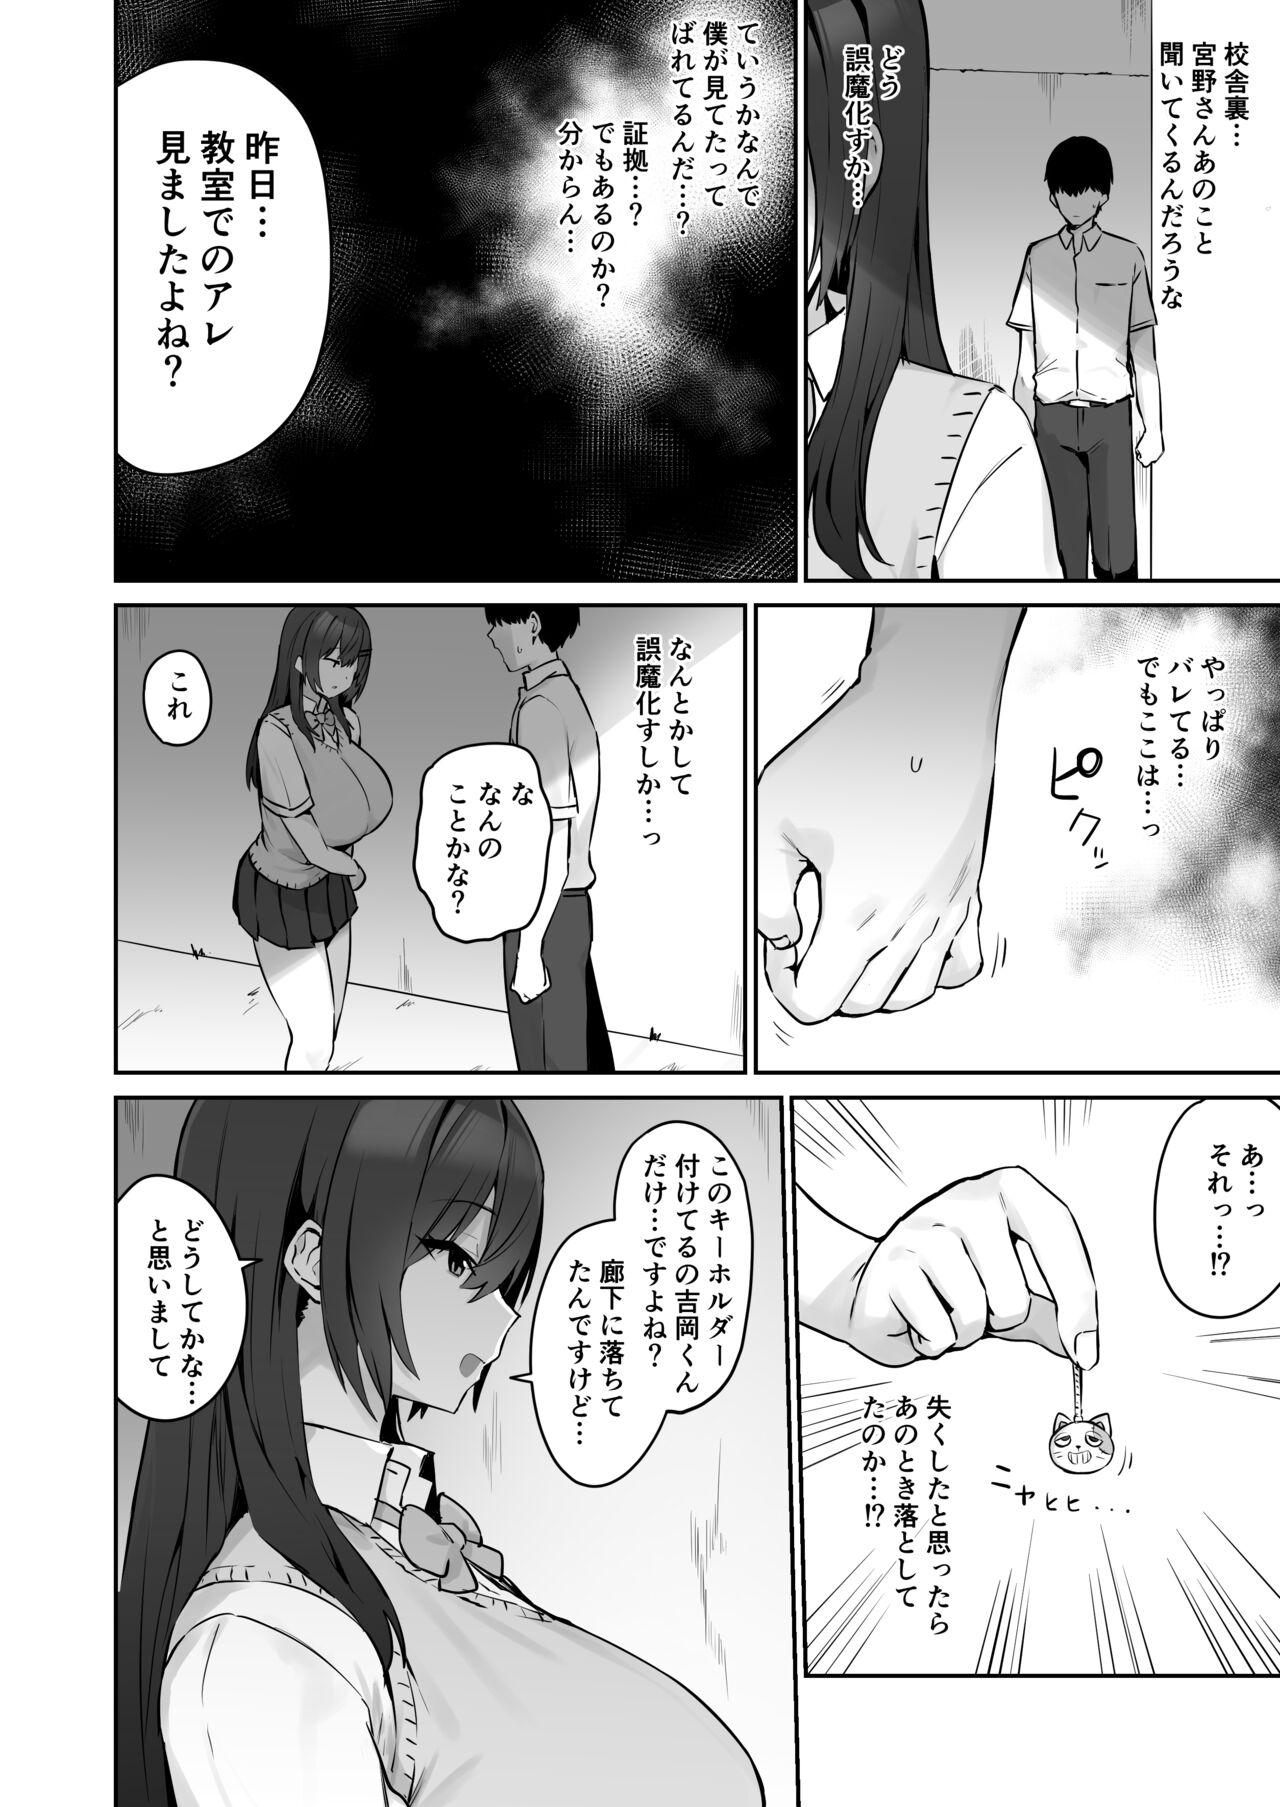 She Majime desu ga, Nani ka? - Original Toy - Page 9